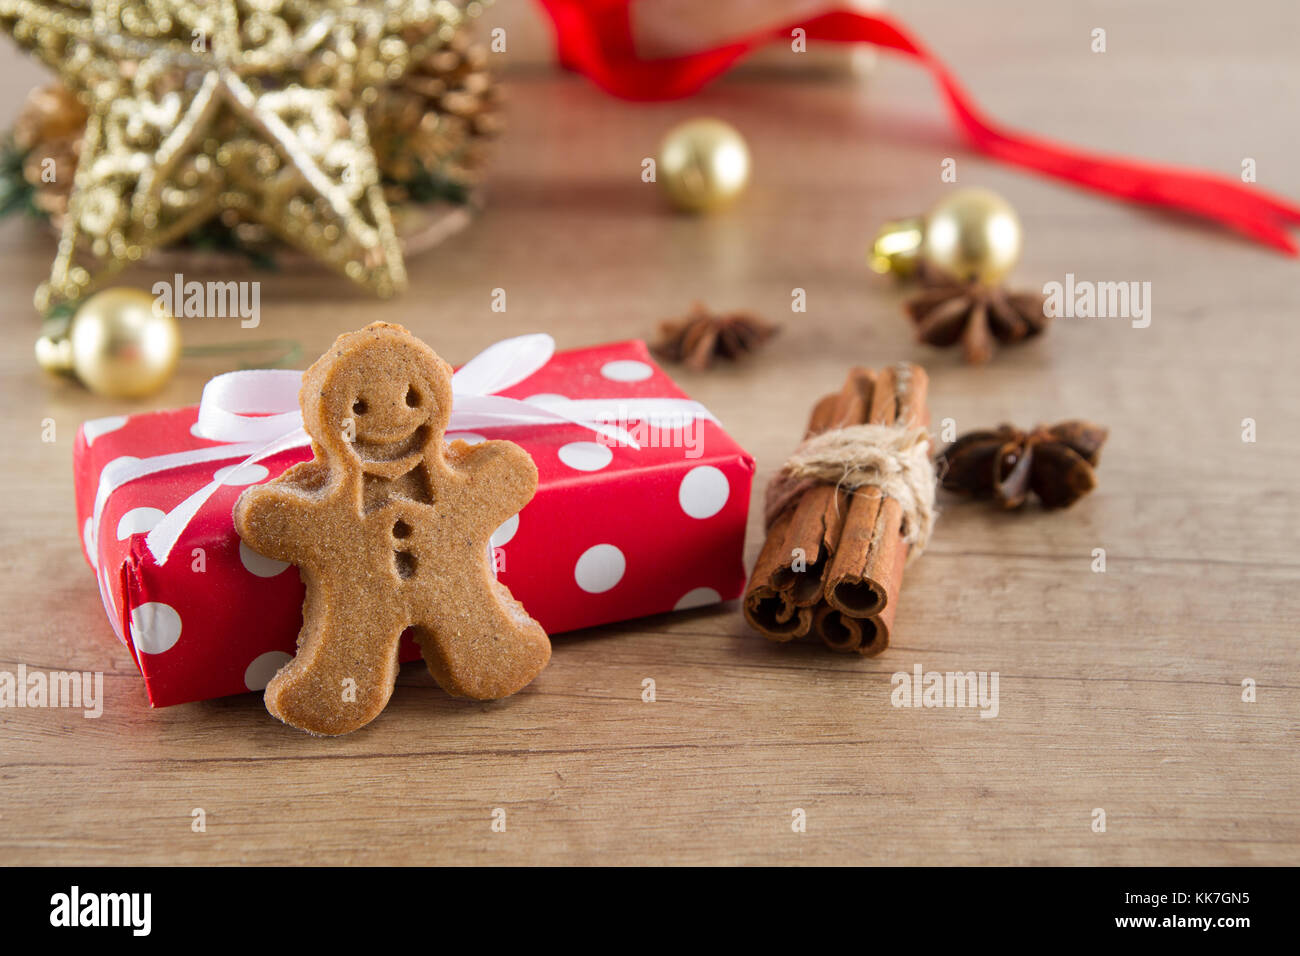 Boîte-cadeau de Noël avec gingerbread cookies faits maison et décoration de Noël Banque D'Images